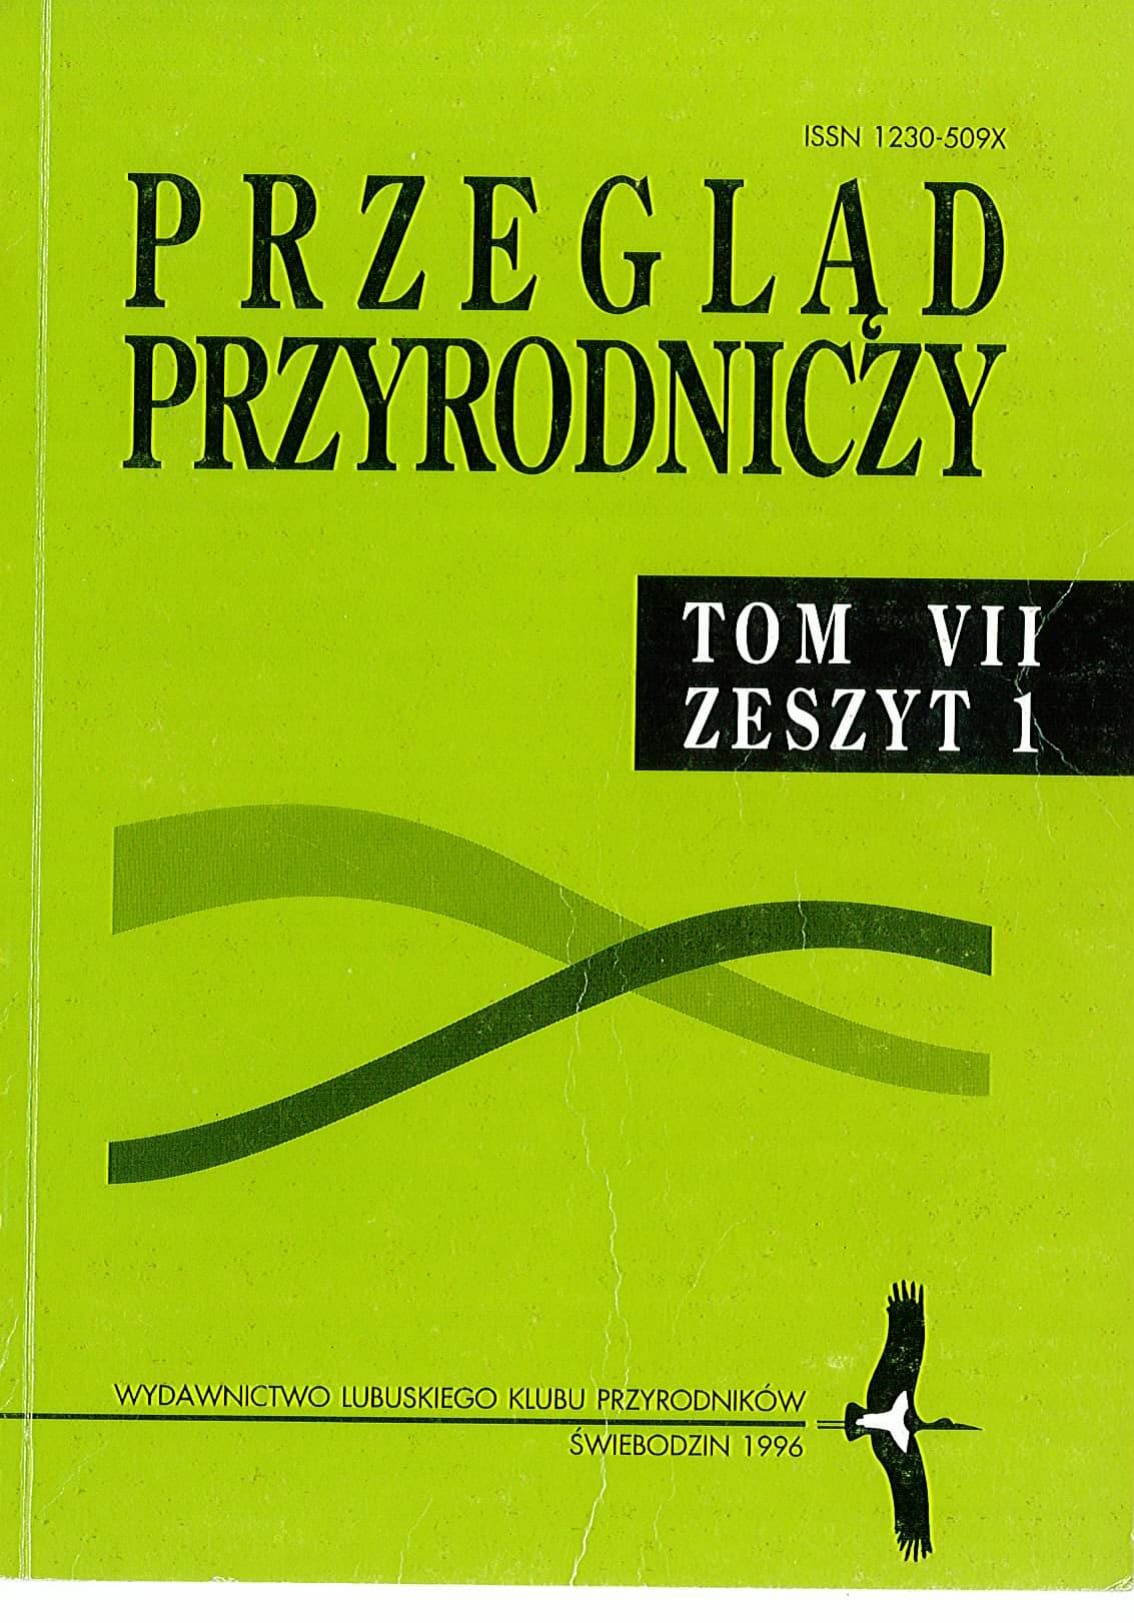 PP T.7 Z.1 1996.1 1